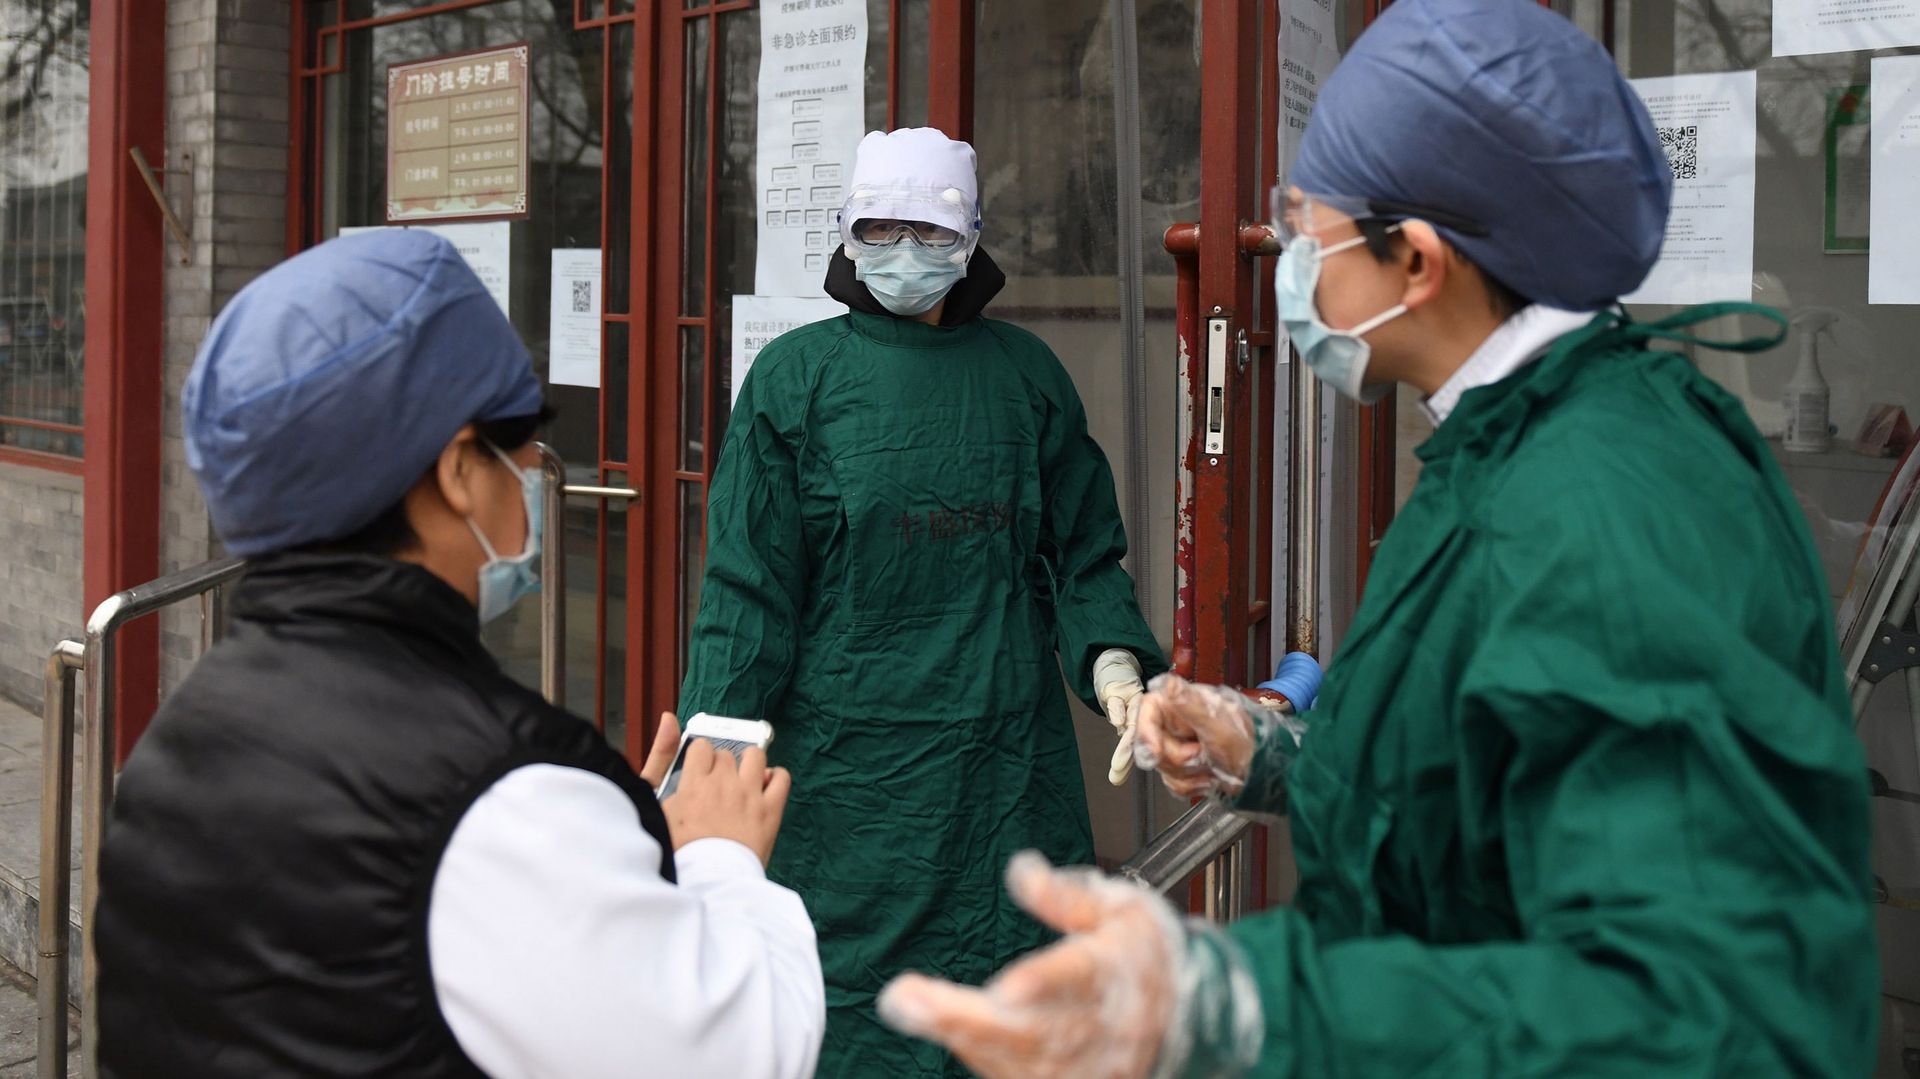 Personnel médical équipé de masque à l'extérieur de l'hôpital de Pékin.